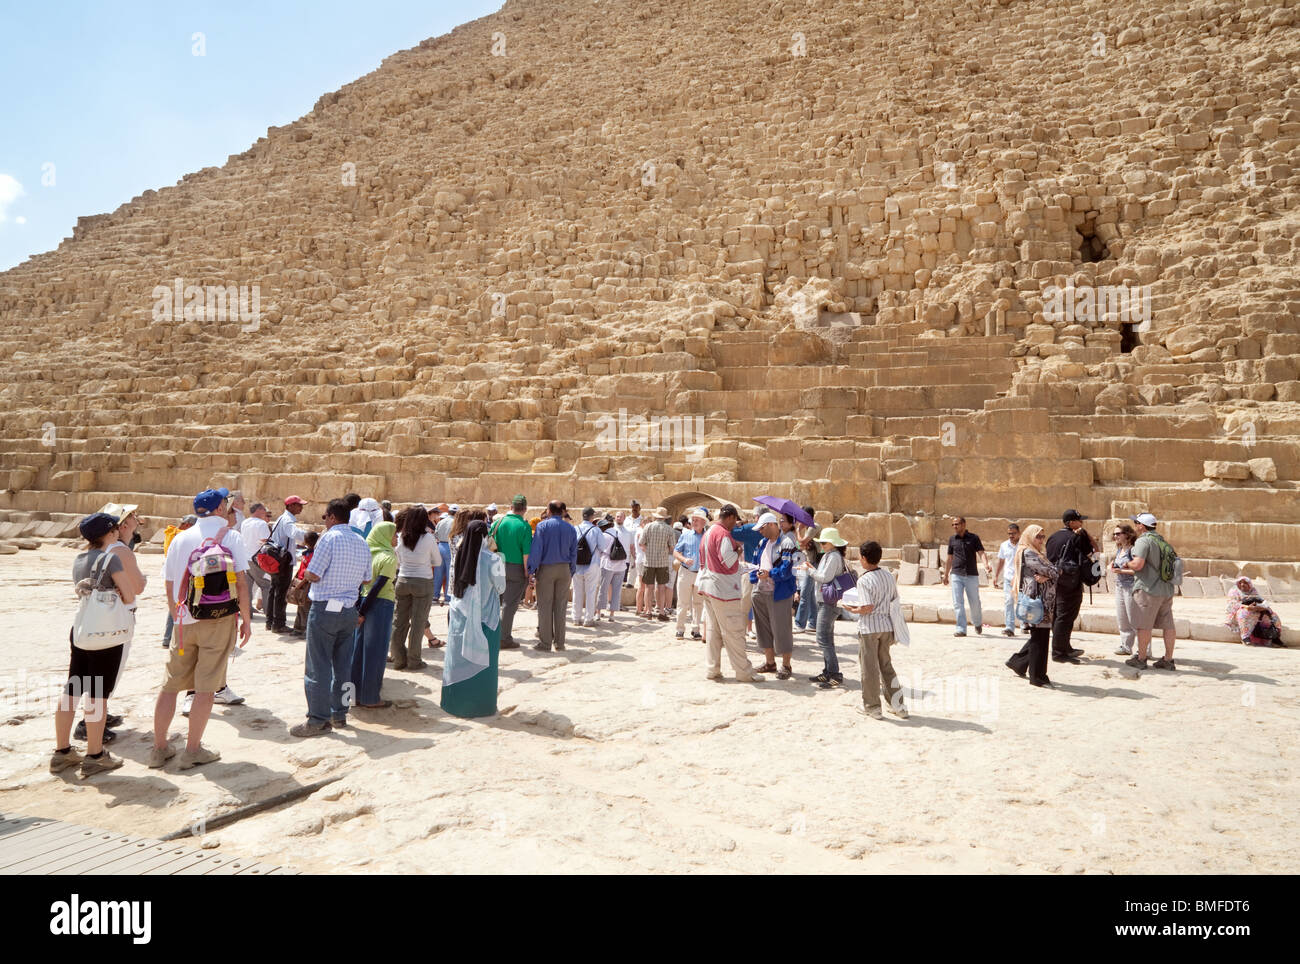 Les touristes faisant la queue pour entrer dans la pyramide de Khéphren (Khafré), Giza, Le Caire, Egypte Banque D'Images